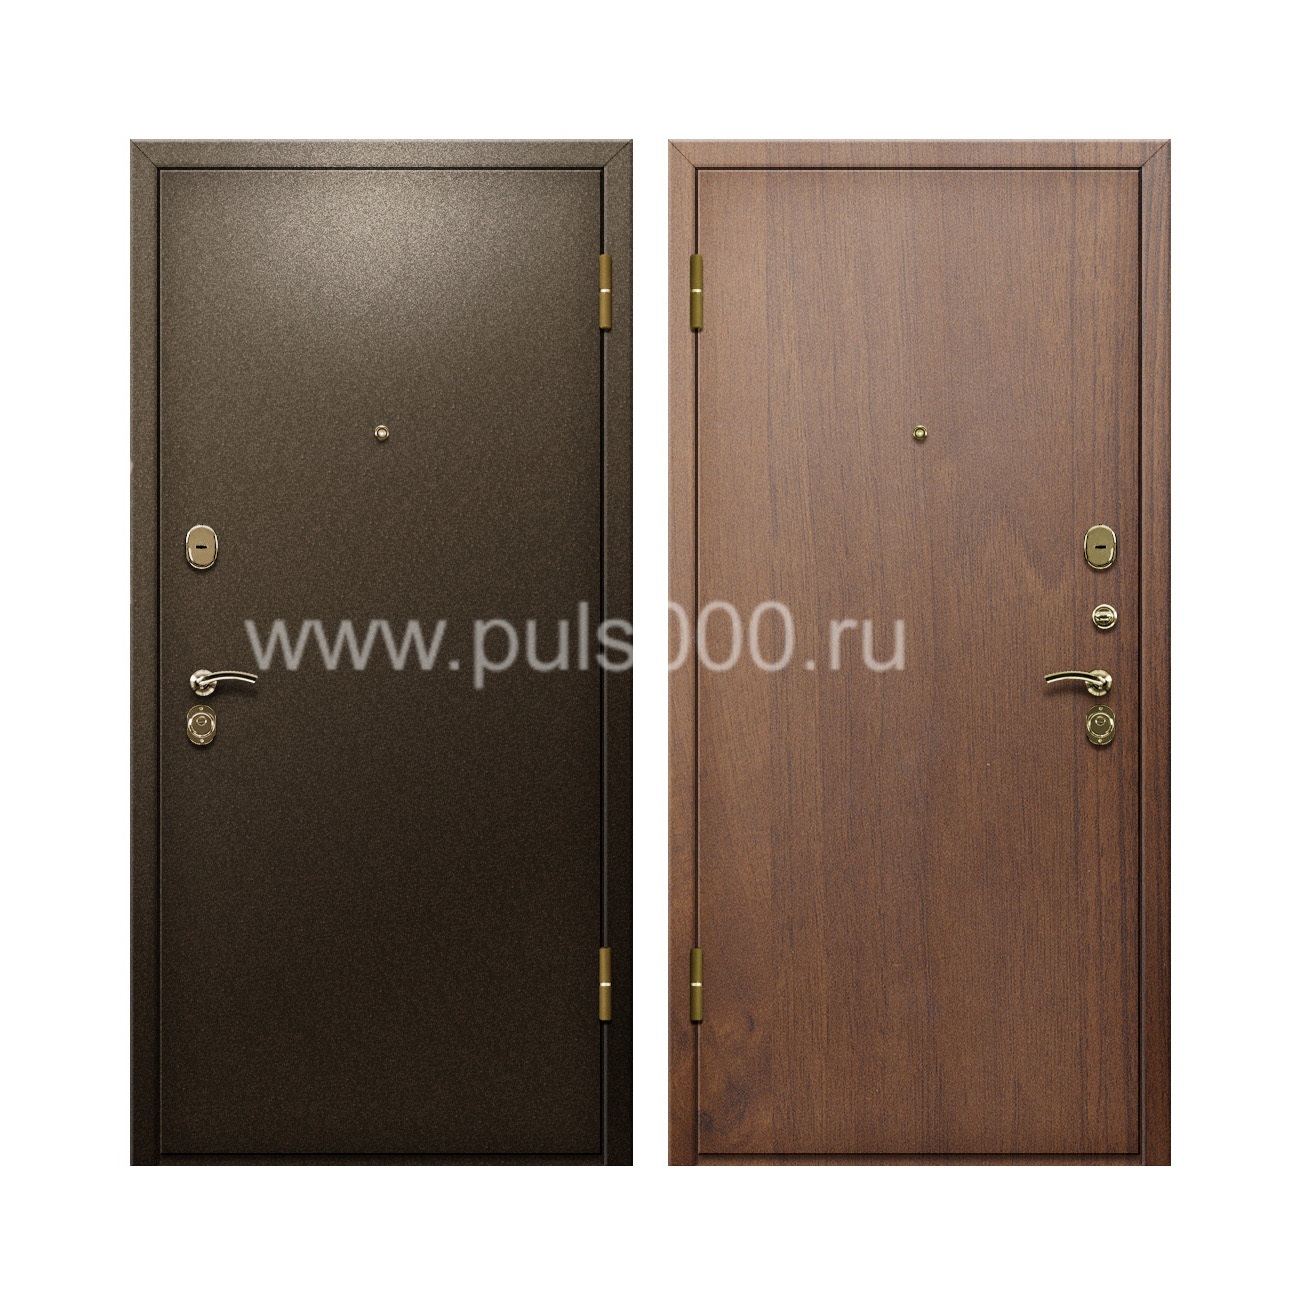 Входная дверь с окрасом из порошка и отделкой ламинатом PR-89, цена 20 000  руб.